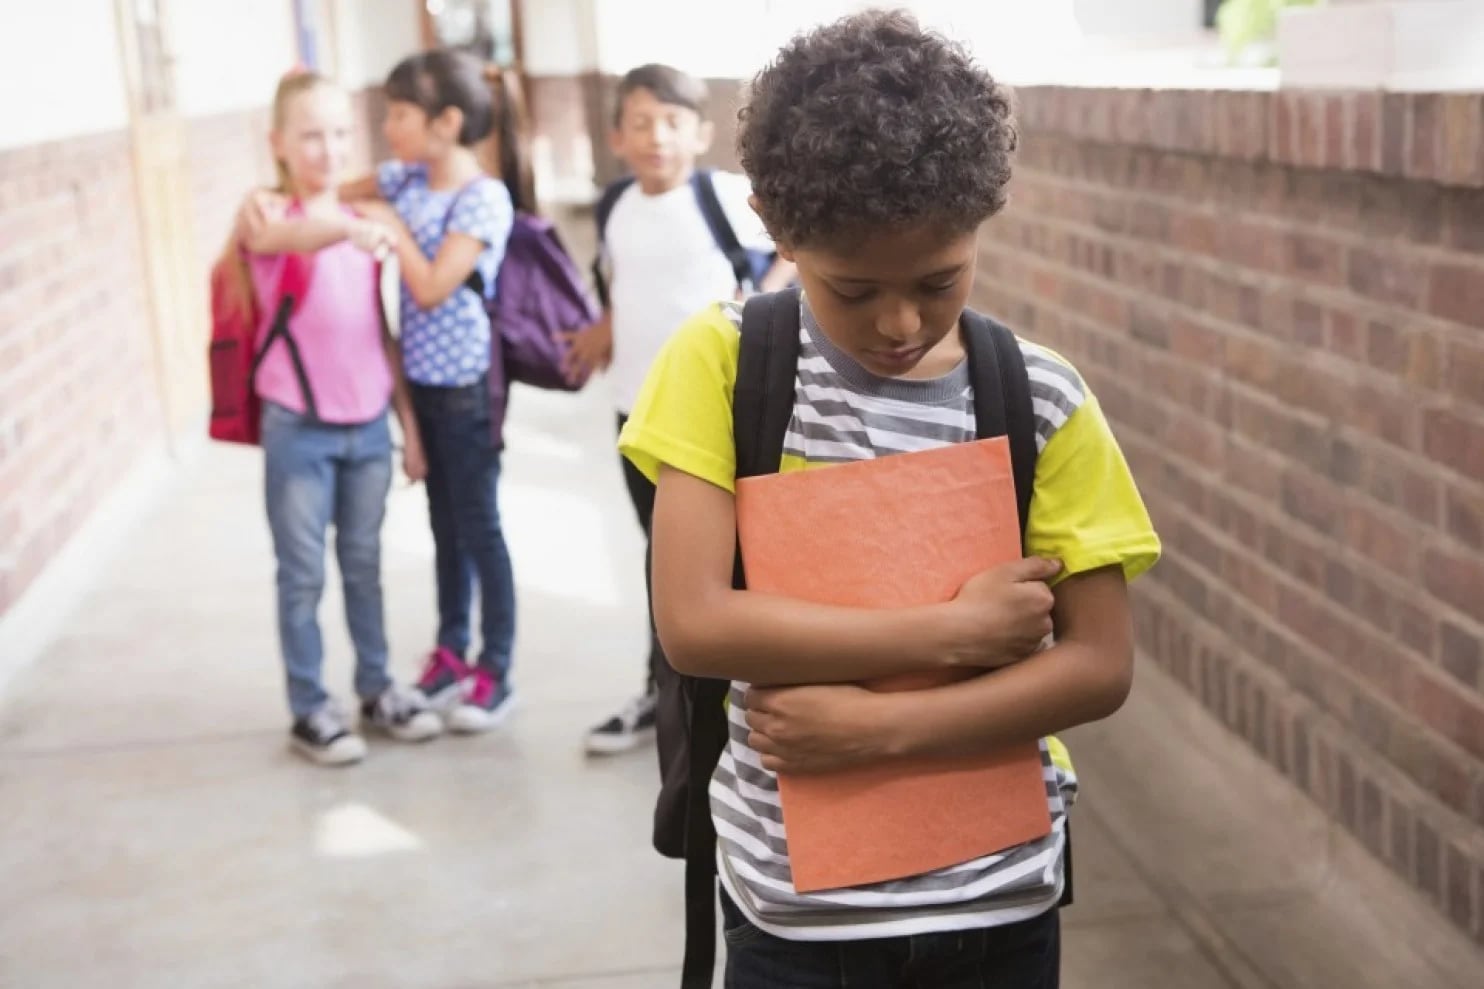 Los niños aprenden a callar si están bajo la presión de la burla de sus compañeros. (Getty Images)